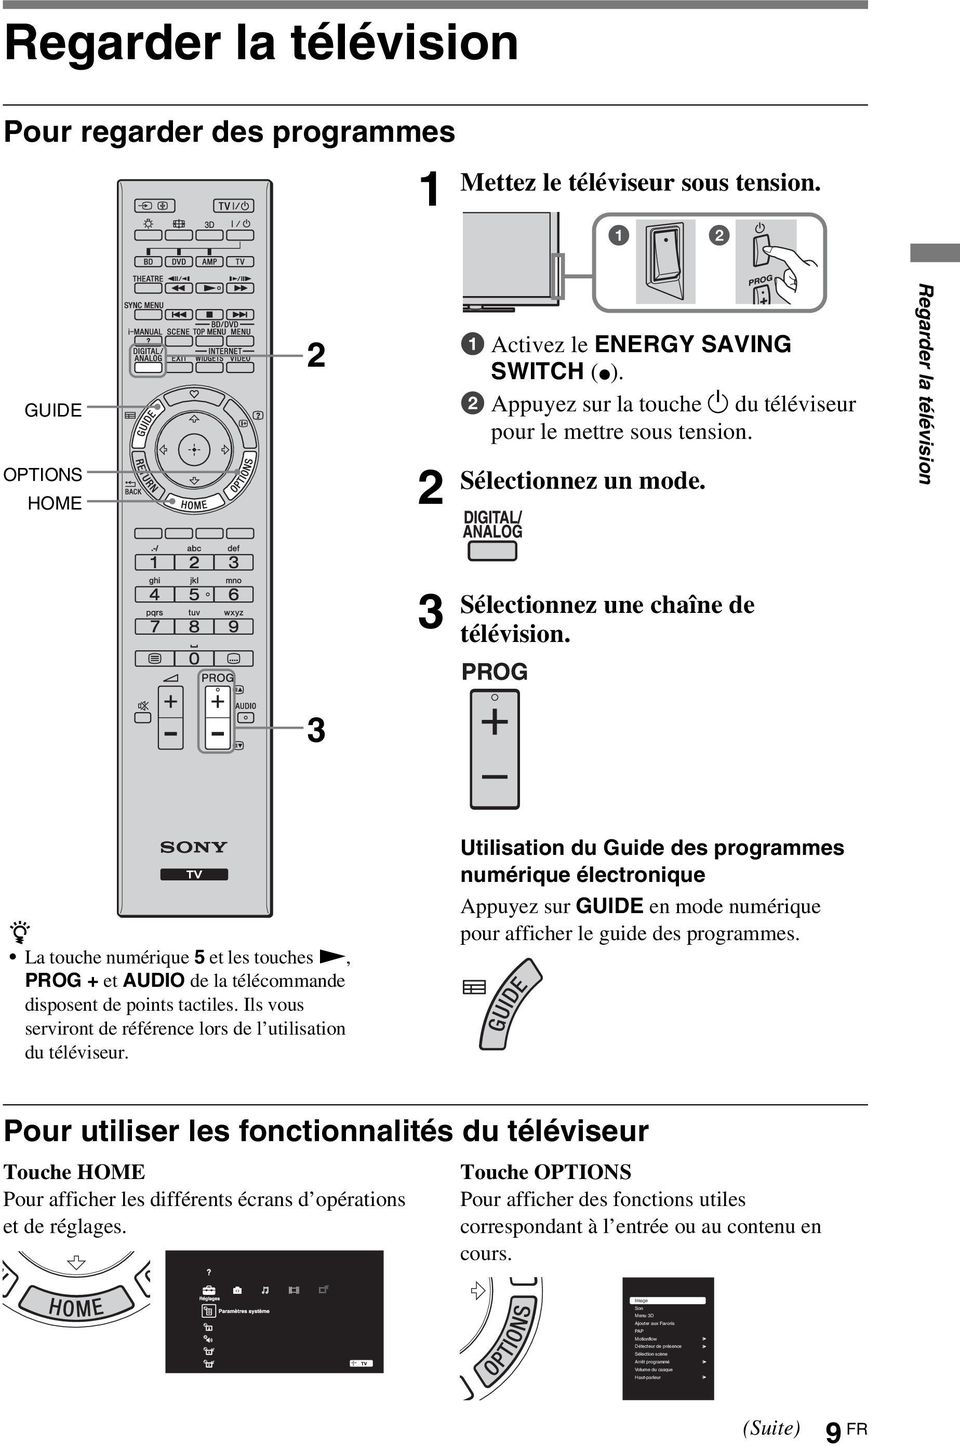 3 z La touche numérique 5 et les touches N, PROG + et AUDIO de la télécommande disposent de points tactiles. Ils vous serviront de référence lors de l utilisation du téléviseur.